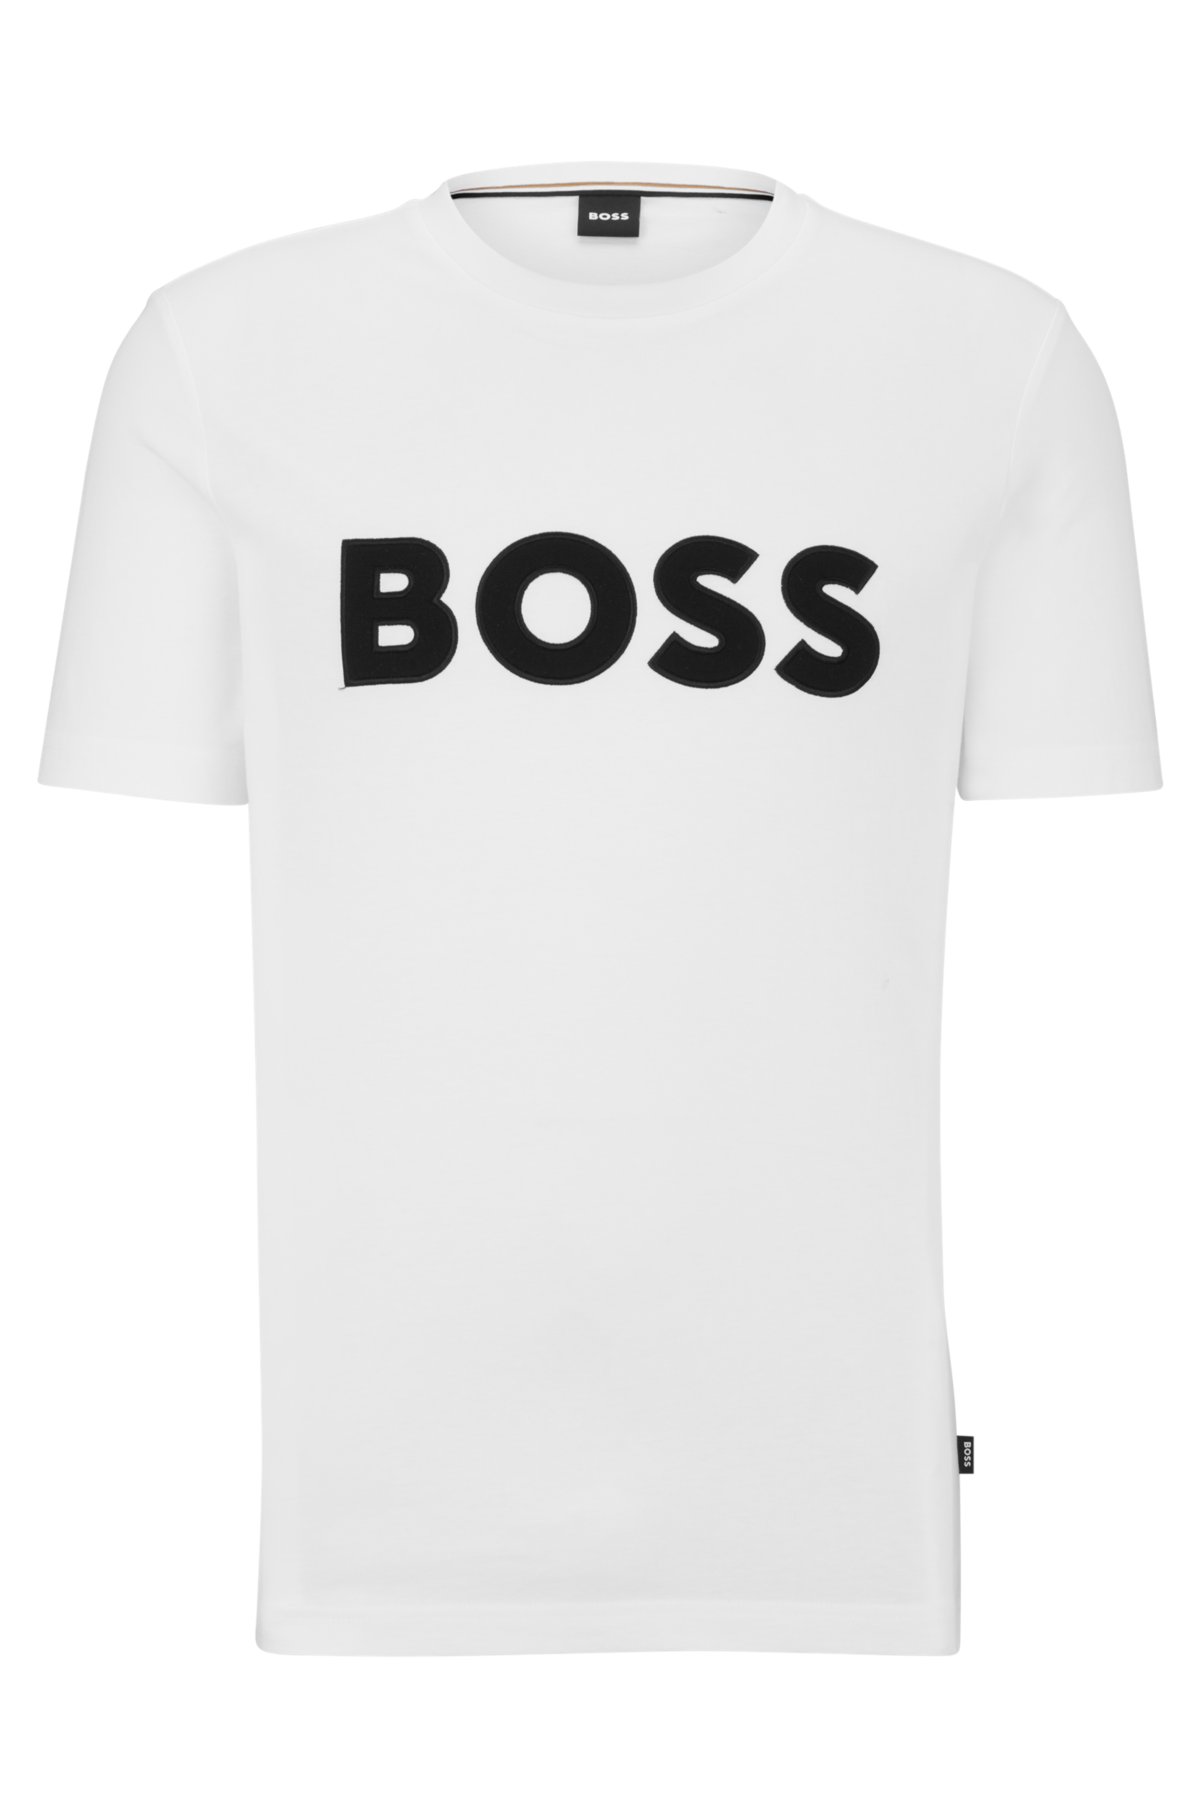 regular-fit - T-shirt with Cotton-jersey BOSS appliqué logo